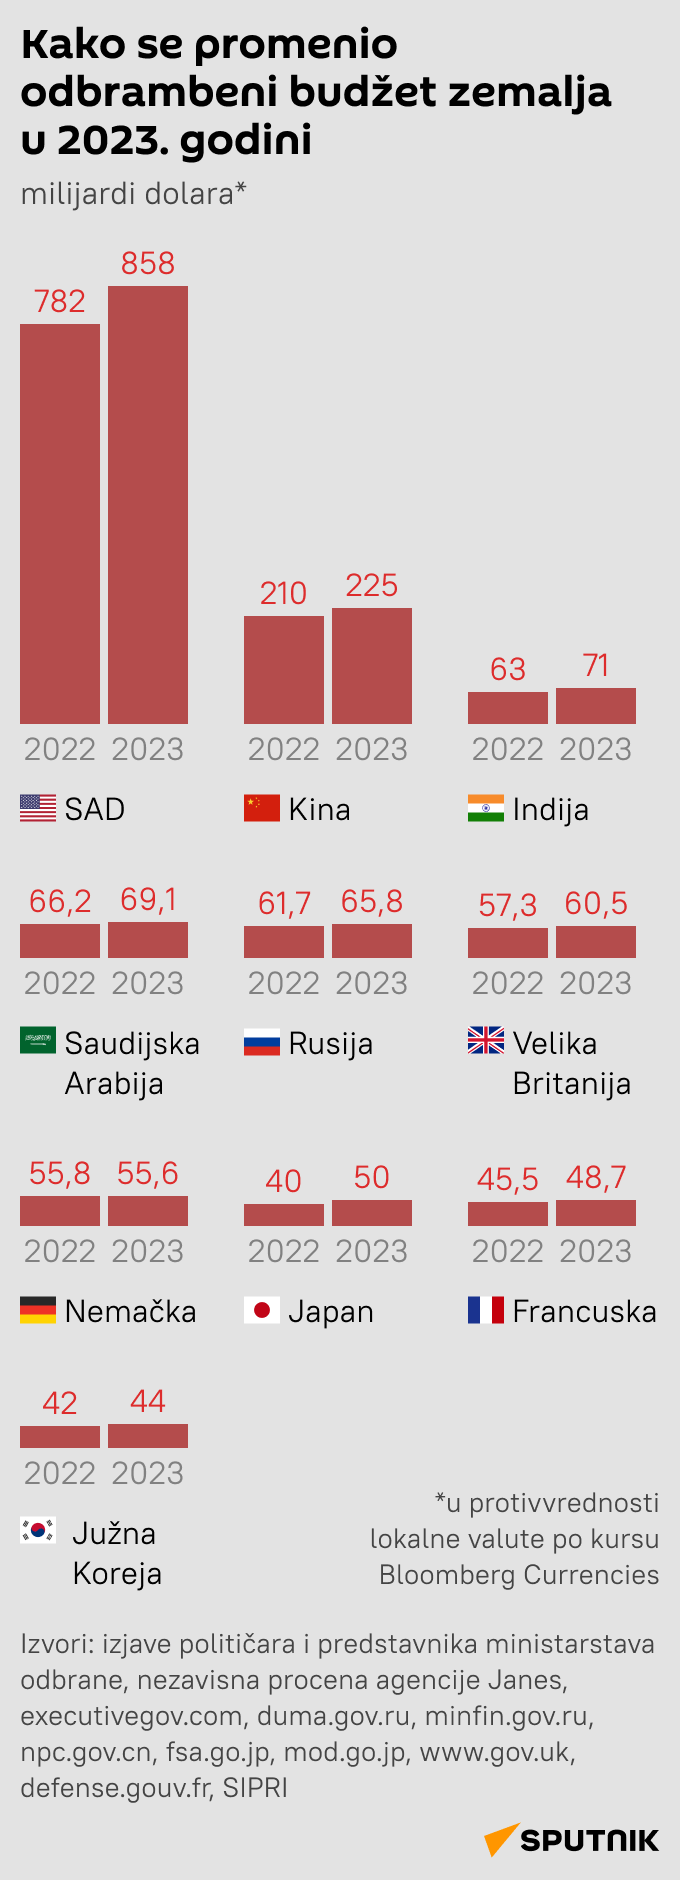 Infografika Kako se promenio odbrambeni budžet zemalja u 2023. godini  LATINICA mob - Sputnik Srbija